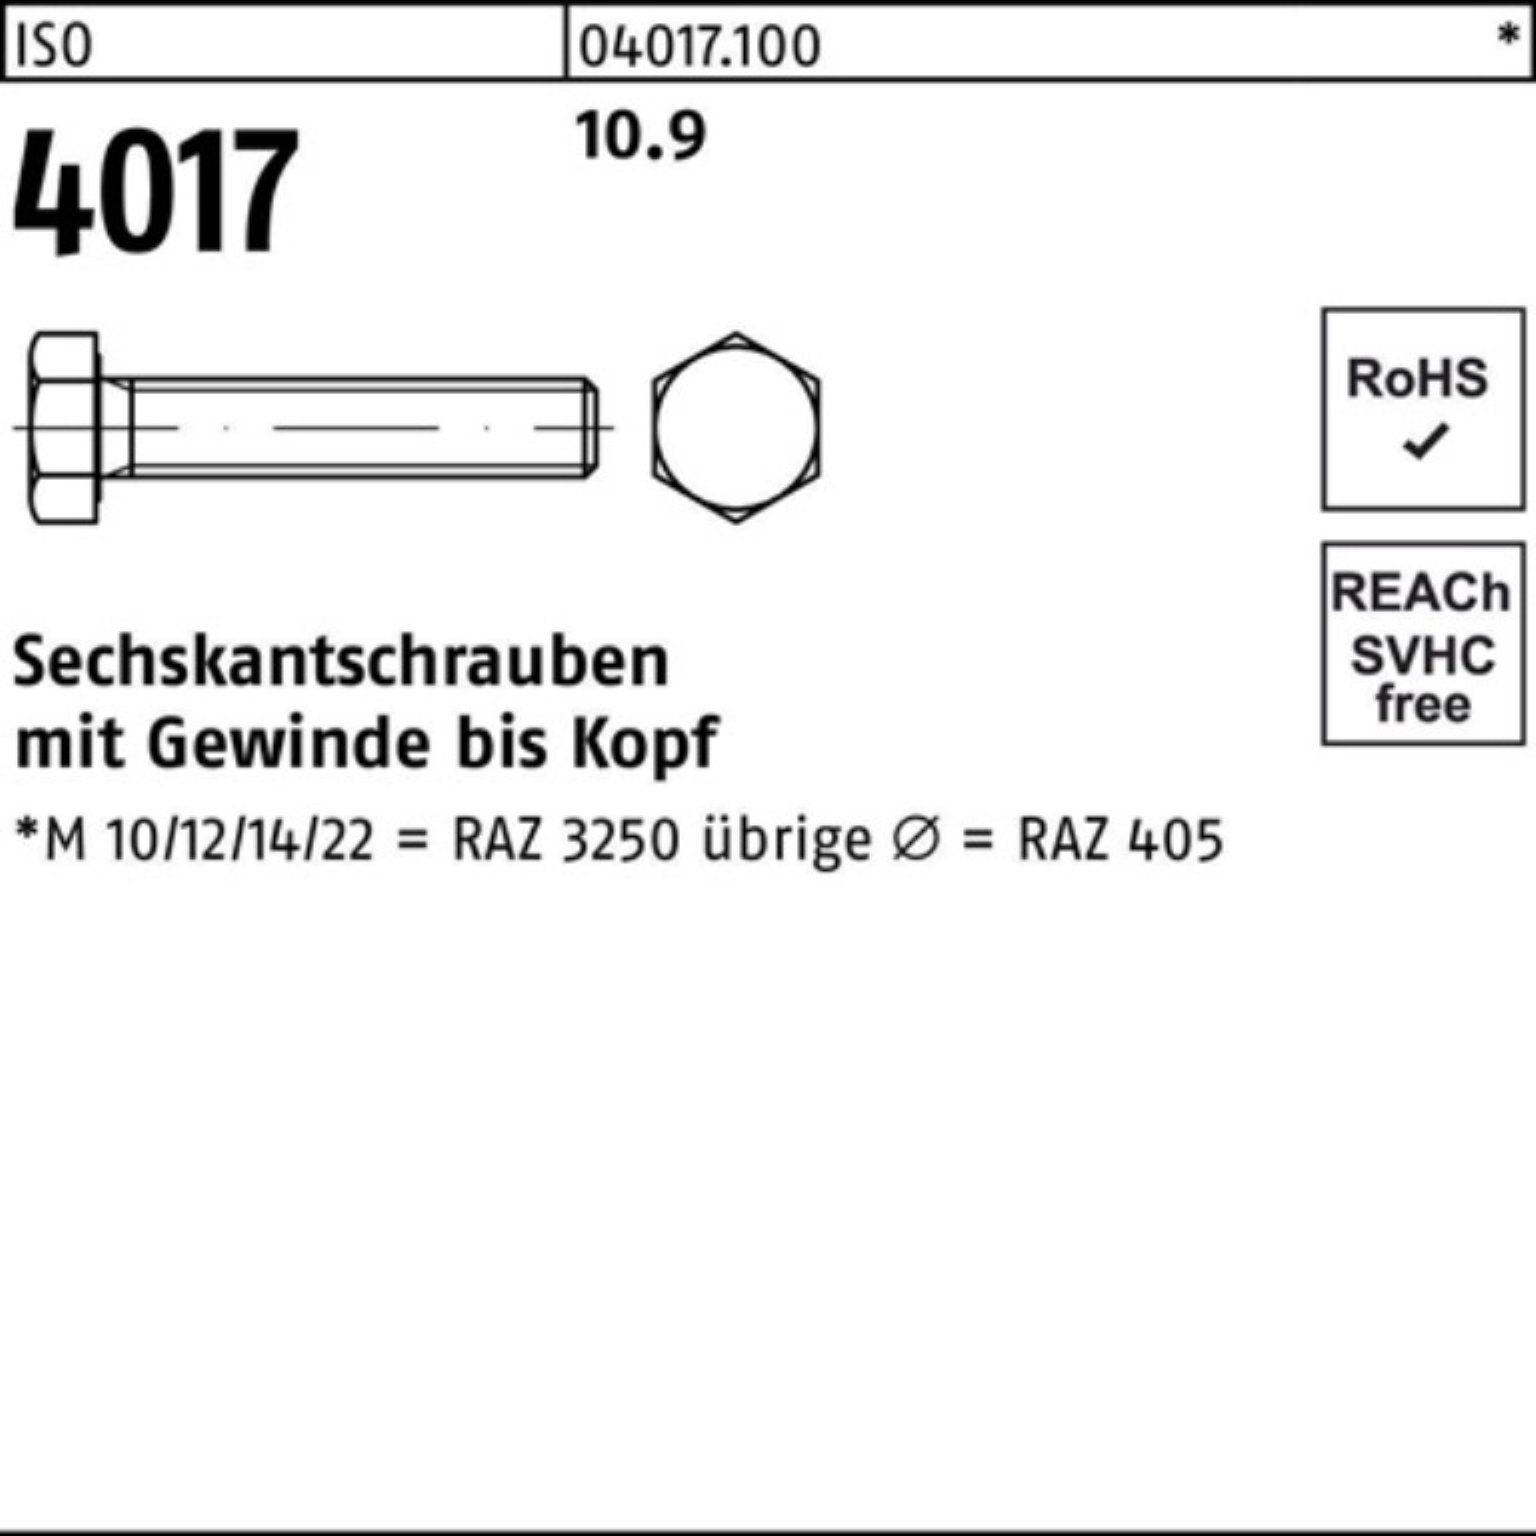 Sechskantschraube M12x 110 ISO 100er Sechskantschraube 4 Bufab ISO Pack Stück 4017 10.9 VG 50